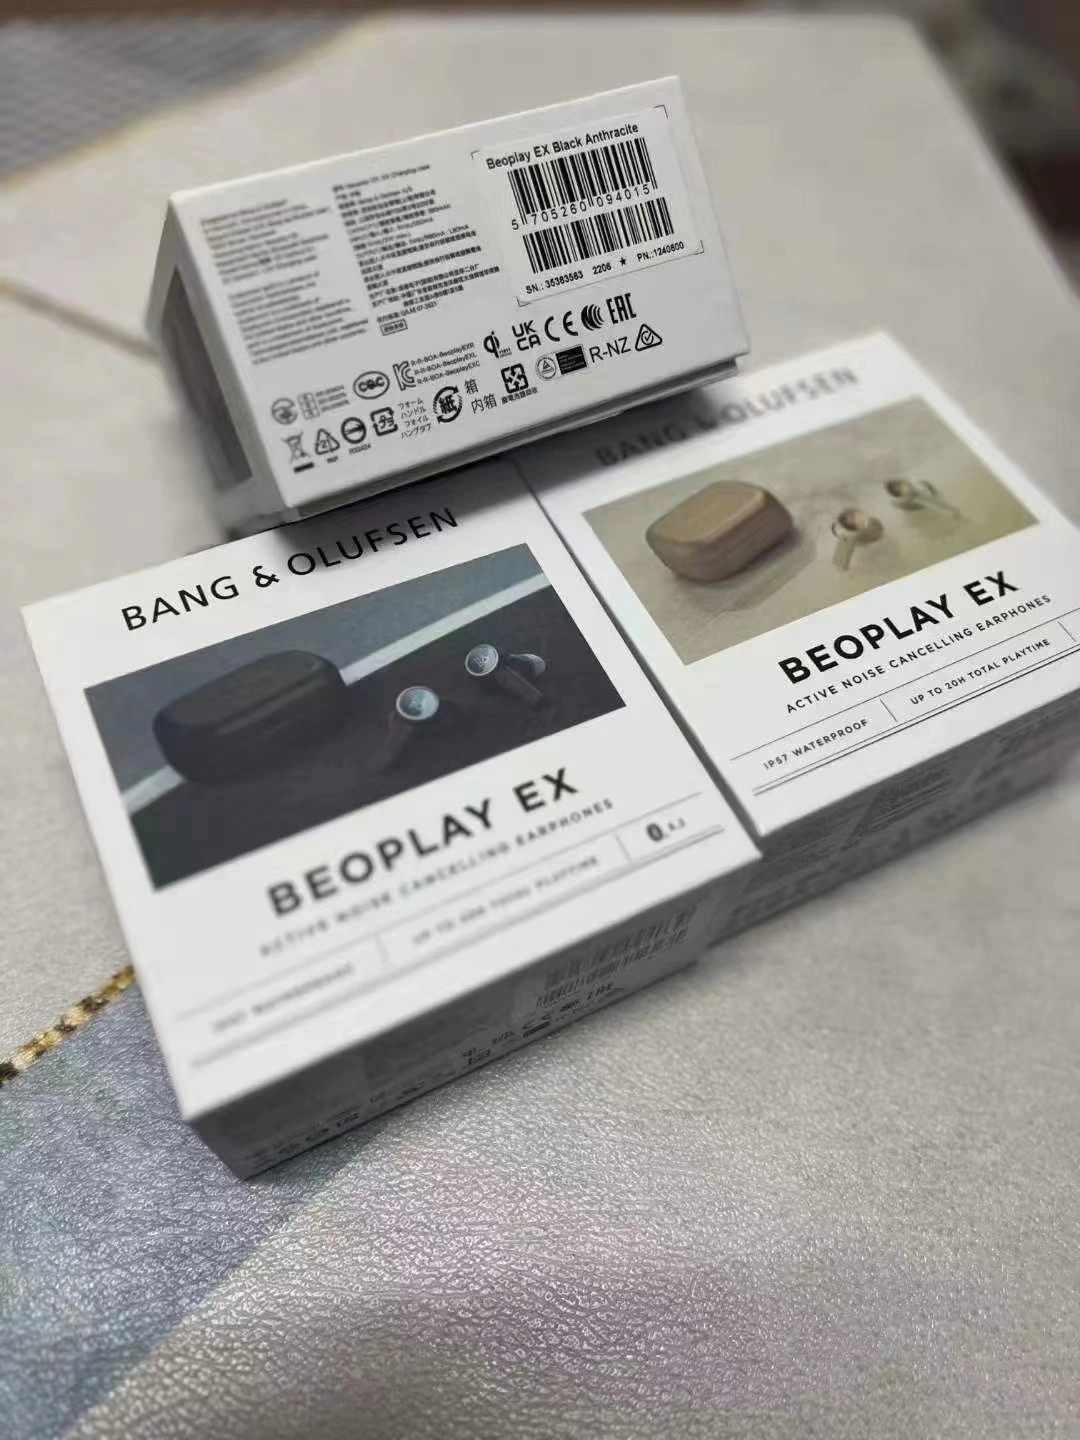 Оригинальные высококачественные наушники Bluetooth спортивных Музыкальные наушники-вкладыши EX Beoplay аксессуары для телефонов